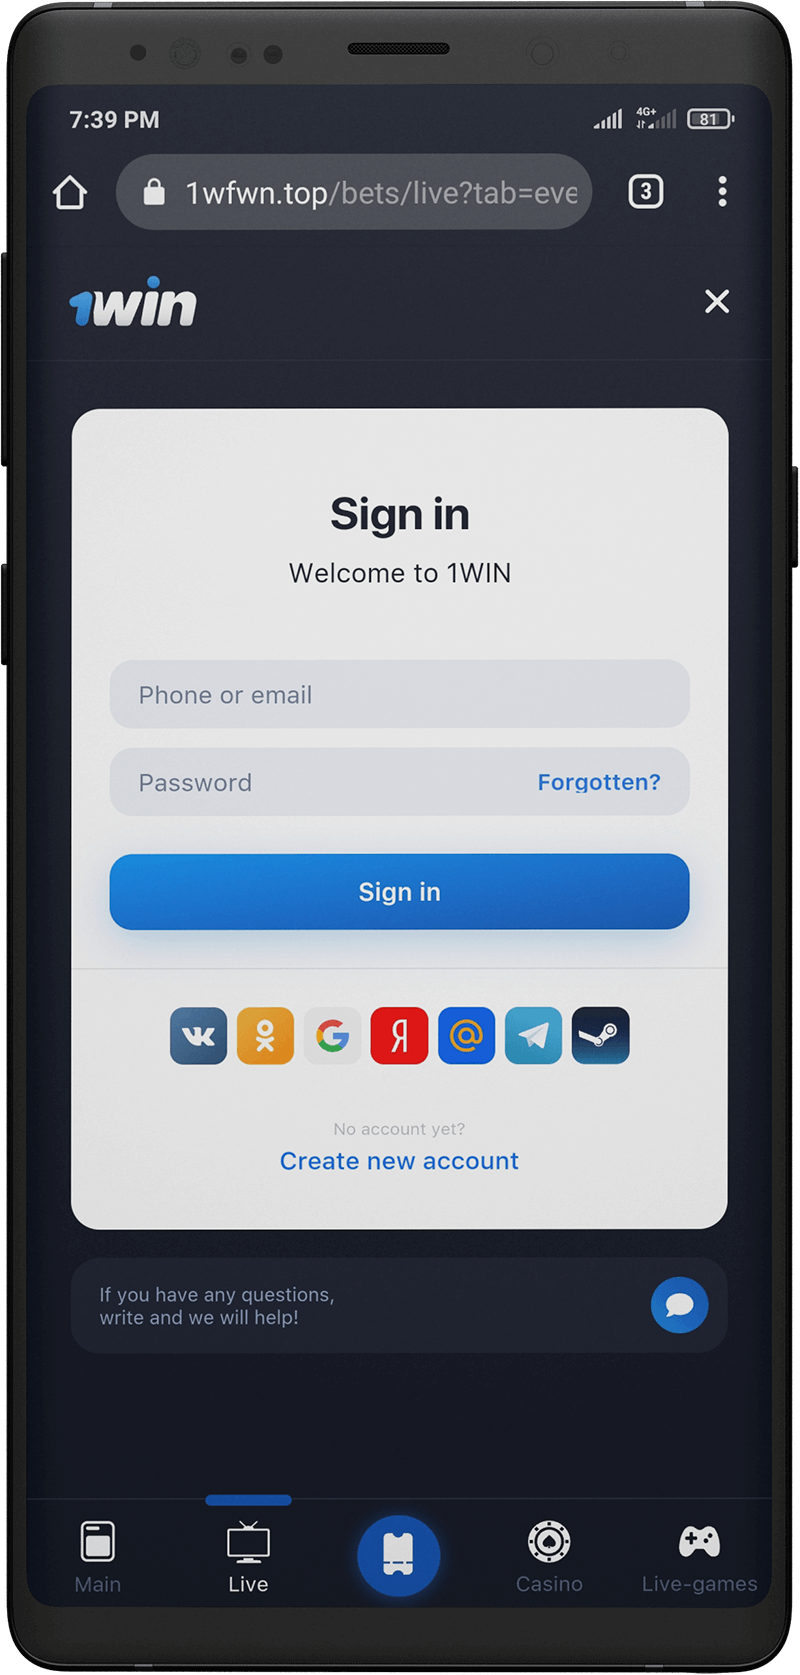 1win registration in the app